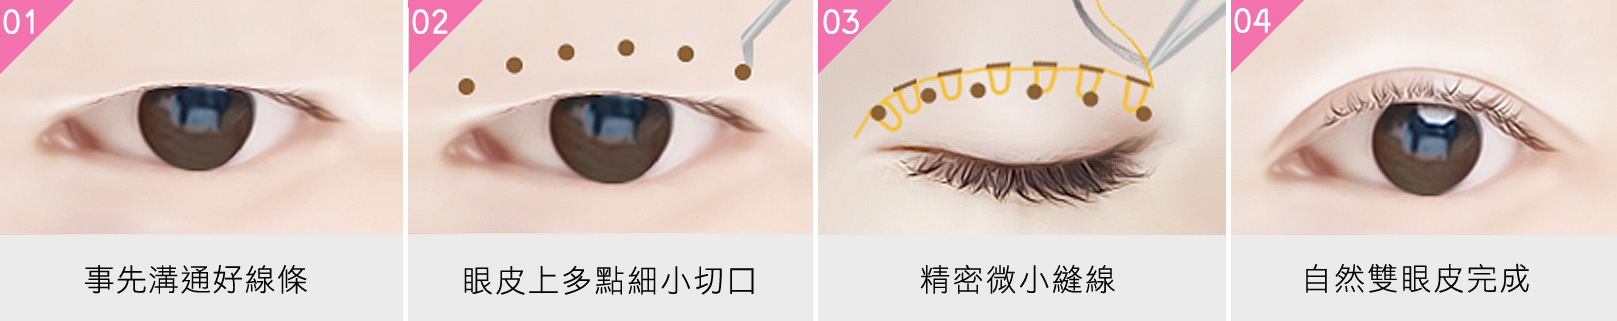 韓后-韓式無痕縫雙眼皮方式-1.事先溝通好線條。2.眼皮上多點細小切口。3.精密微小縫線。4.自然雙眼皮完成。